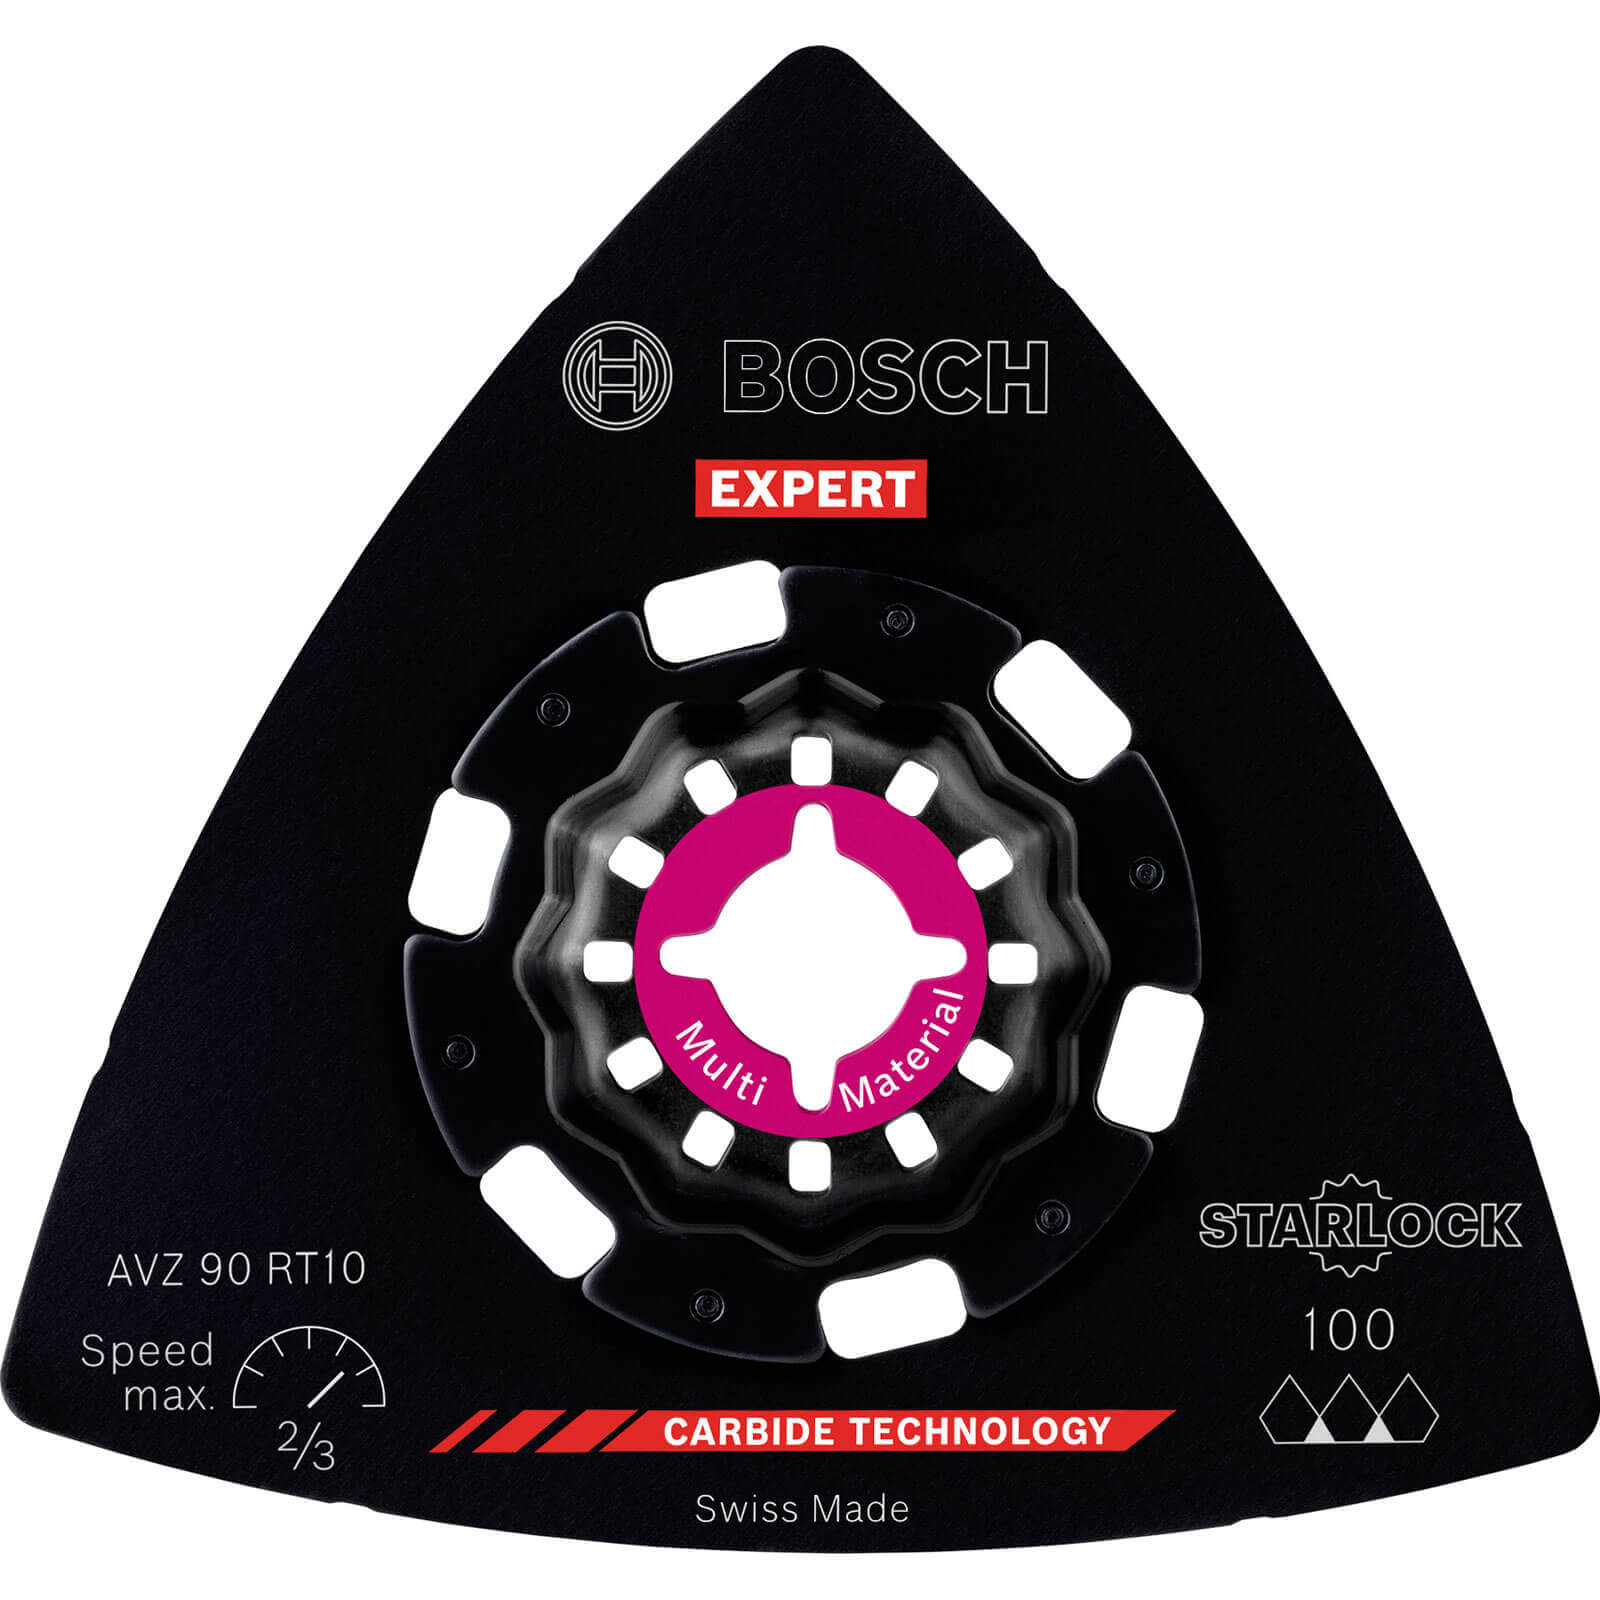 Image of Bosch Expert AVZ 90 RT Starlock Oscillating Multi Tool Sanding Plate 90mm 100g Pack of 1